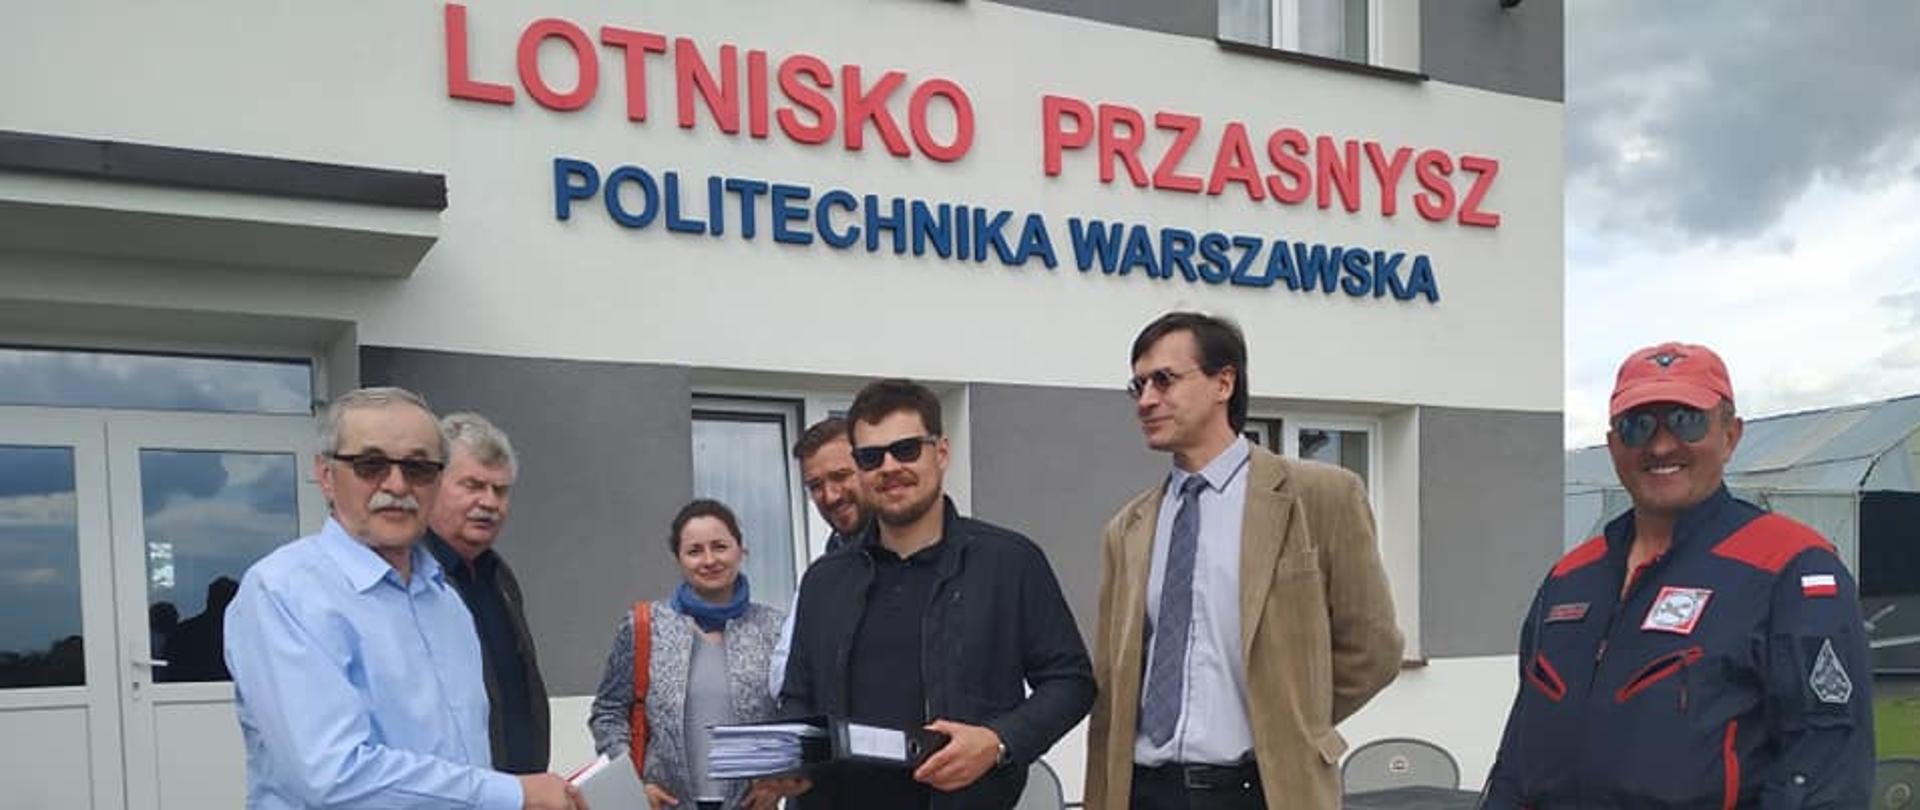 Zdjęcie przedstawia przedstawicieli Lotniska w Sierakowie pod Przasnyszem i Politechniki Warszawskiej wymieniających dokumenty po podpisaniu umowy na budowę laboratorium.